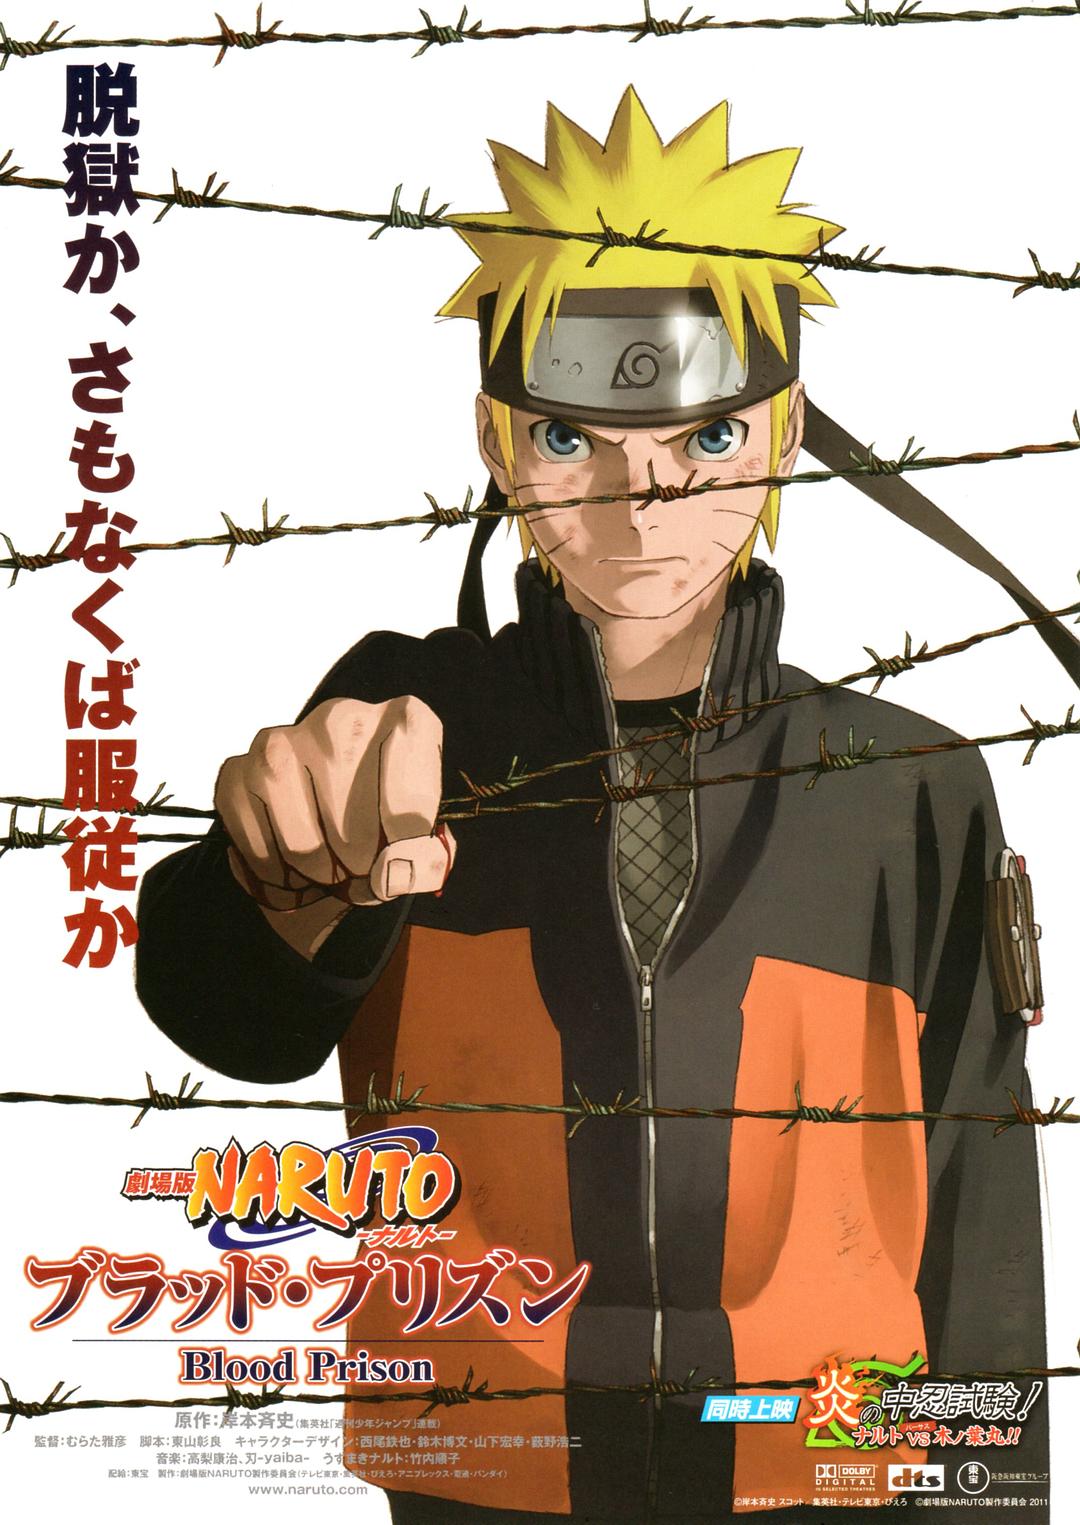 火影忍者戏院版:血狱 Naruto.Shippuden.The.Movie.Blood.Prison.2011.JAPANESE.1080p.BluRay.x264.DTS-FGT 10.39GB-1.png